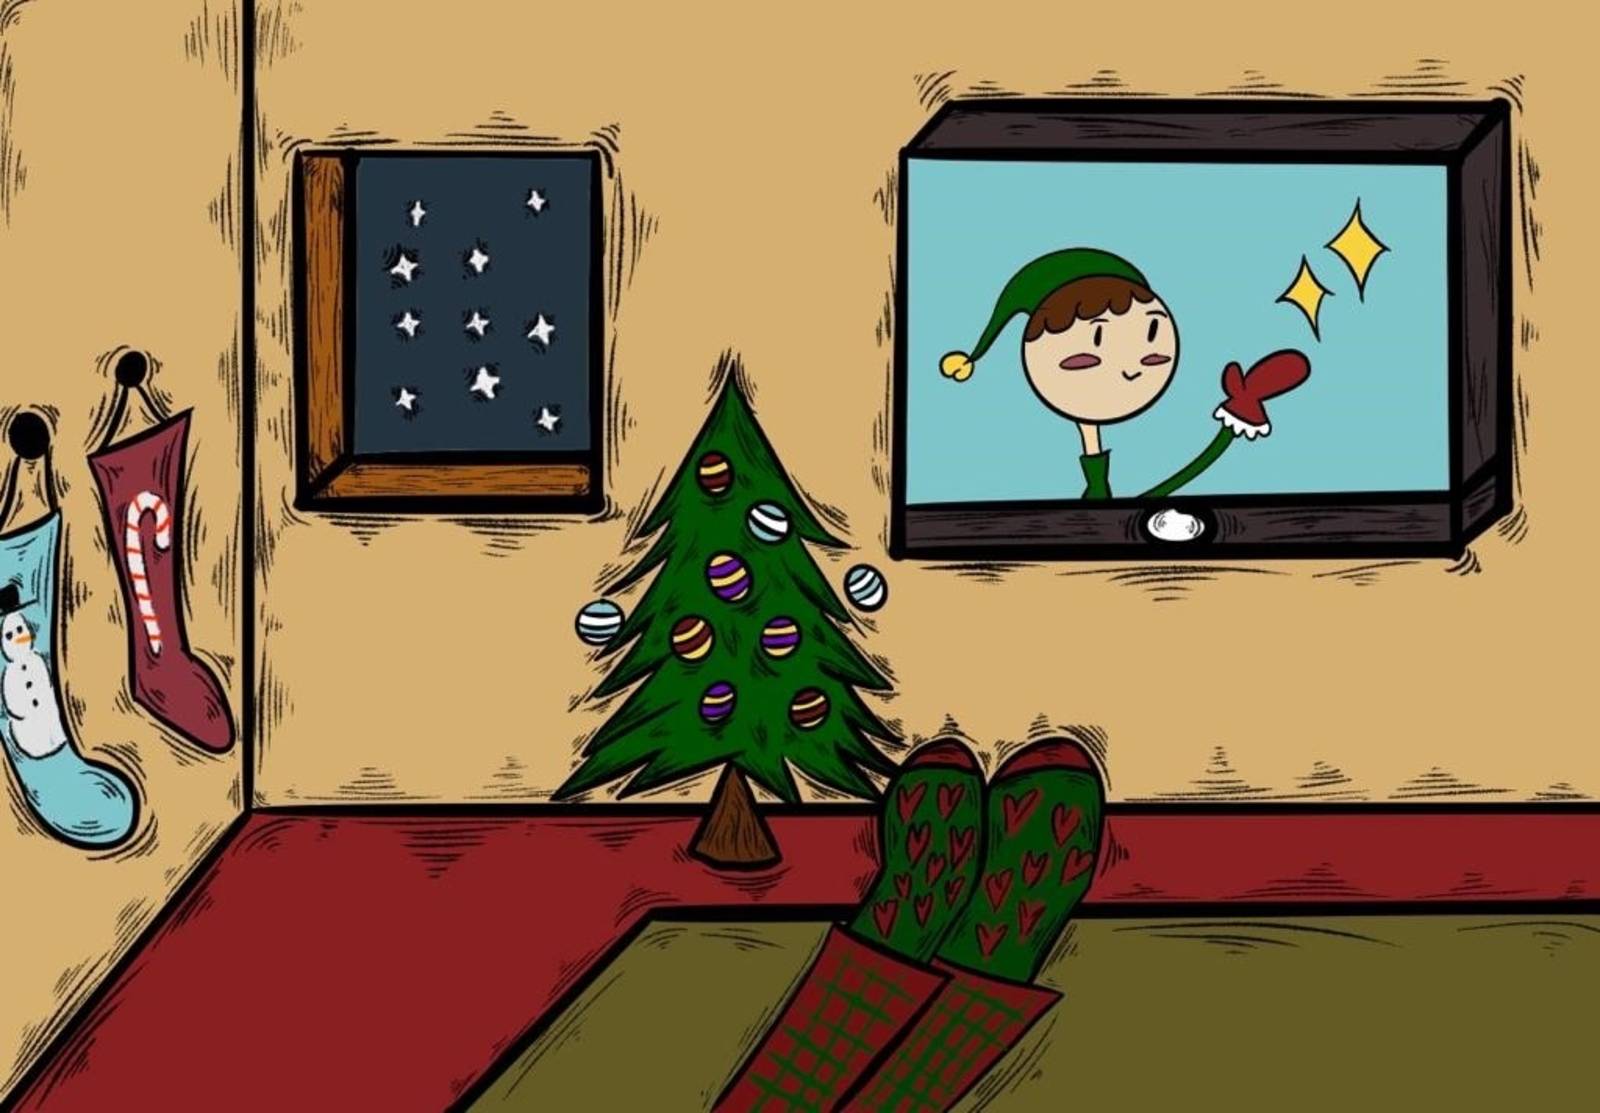 Zu sehen ist eine weihnachtliche Grafik, welche einen Fernseher zeigt in dem ein Weihnachtswichtel zu sehen ist. Neben dem Fernseher steht ein geschmückter Tannenbaum und an der Wand hängen gefüllte Socken.